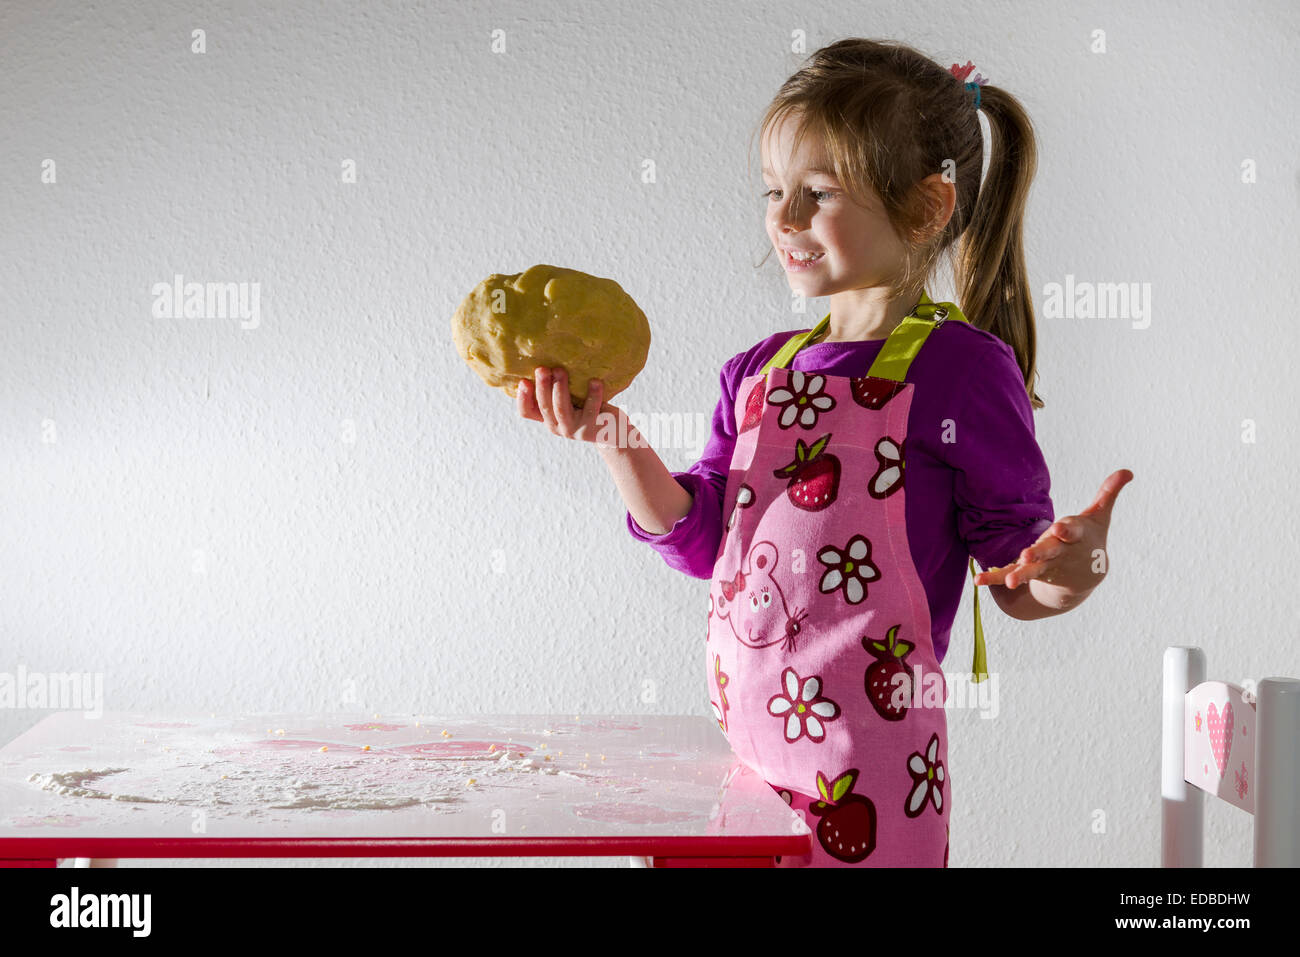 Fille, 3 ans, la cuisson, tenant un morceau de pâte dans sa main Banque D'Images